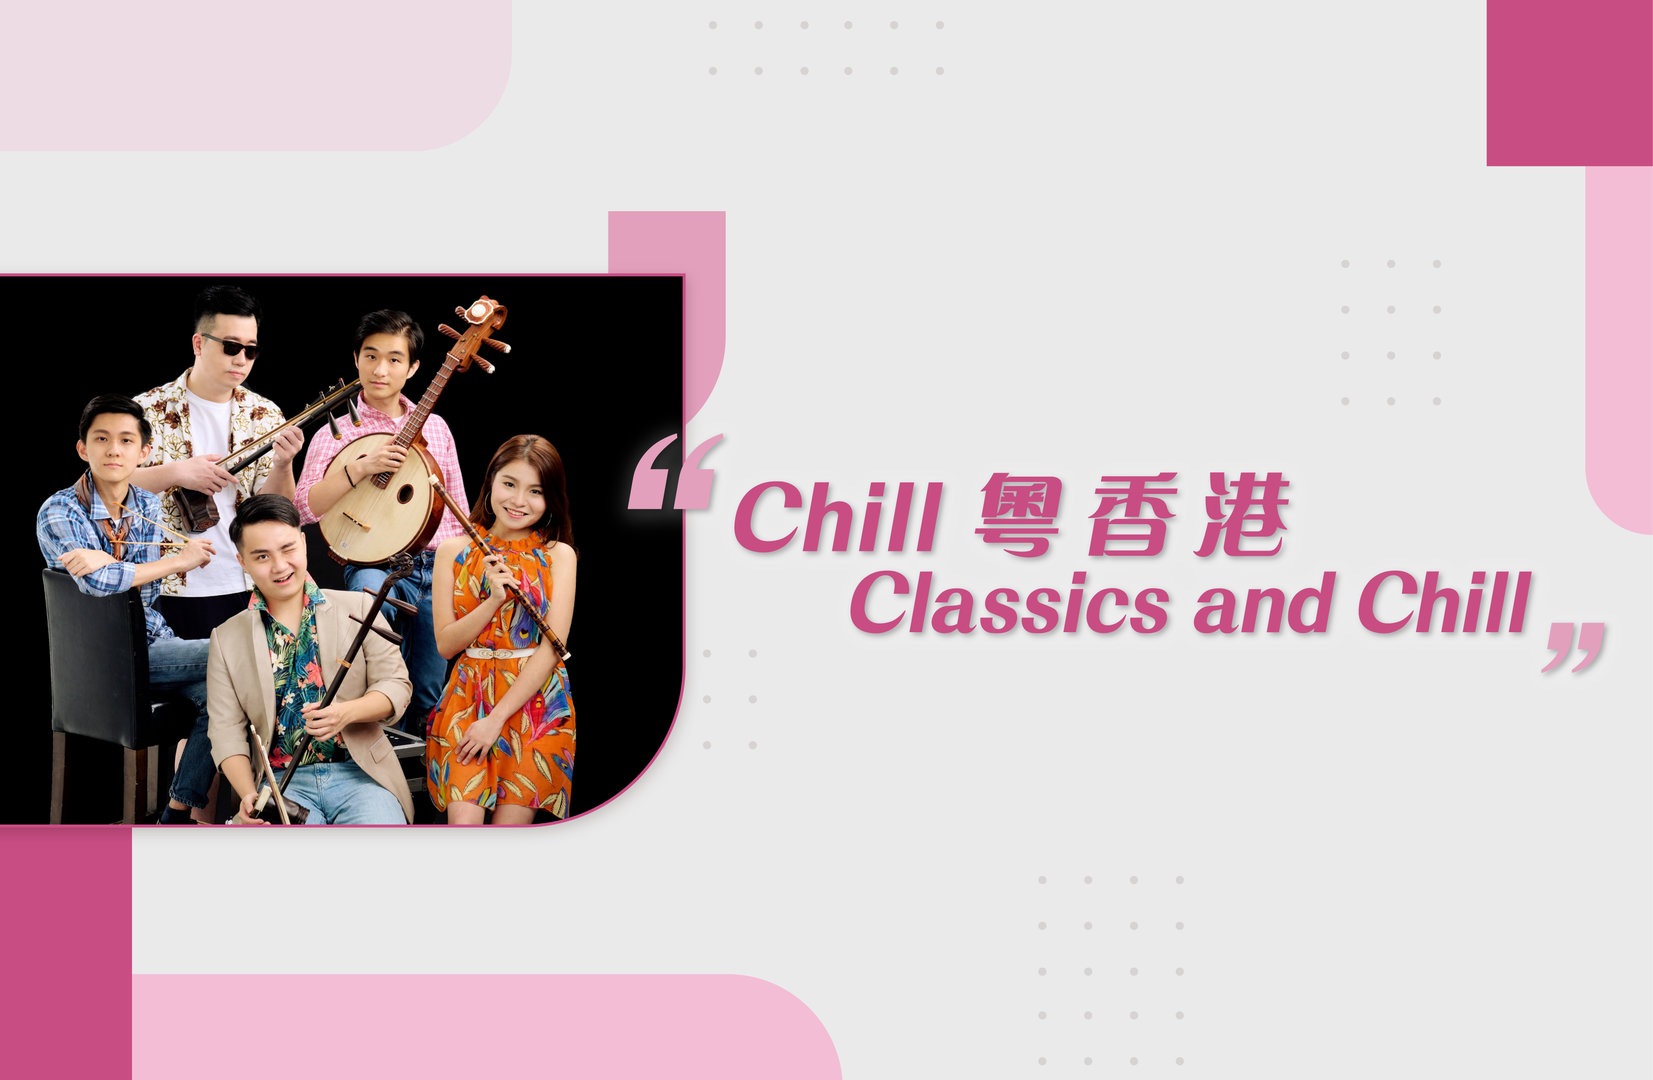 Cantonese Music Theatre “Classics and Chill”e